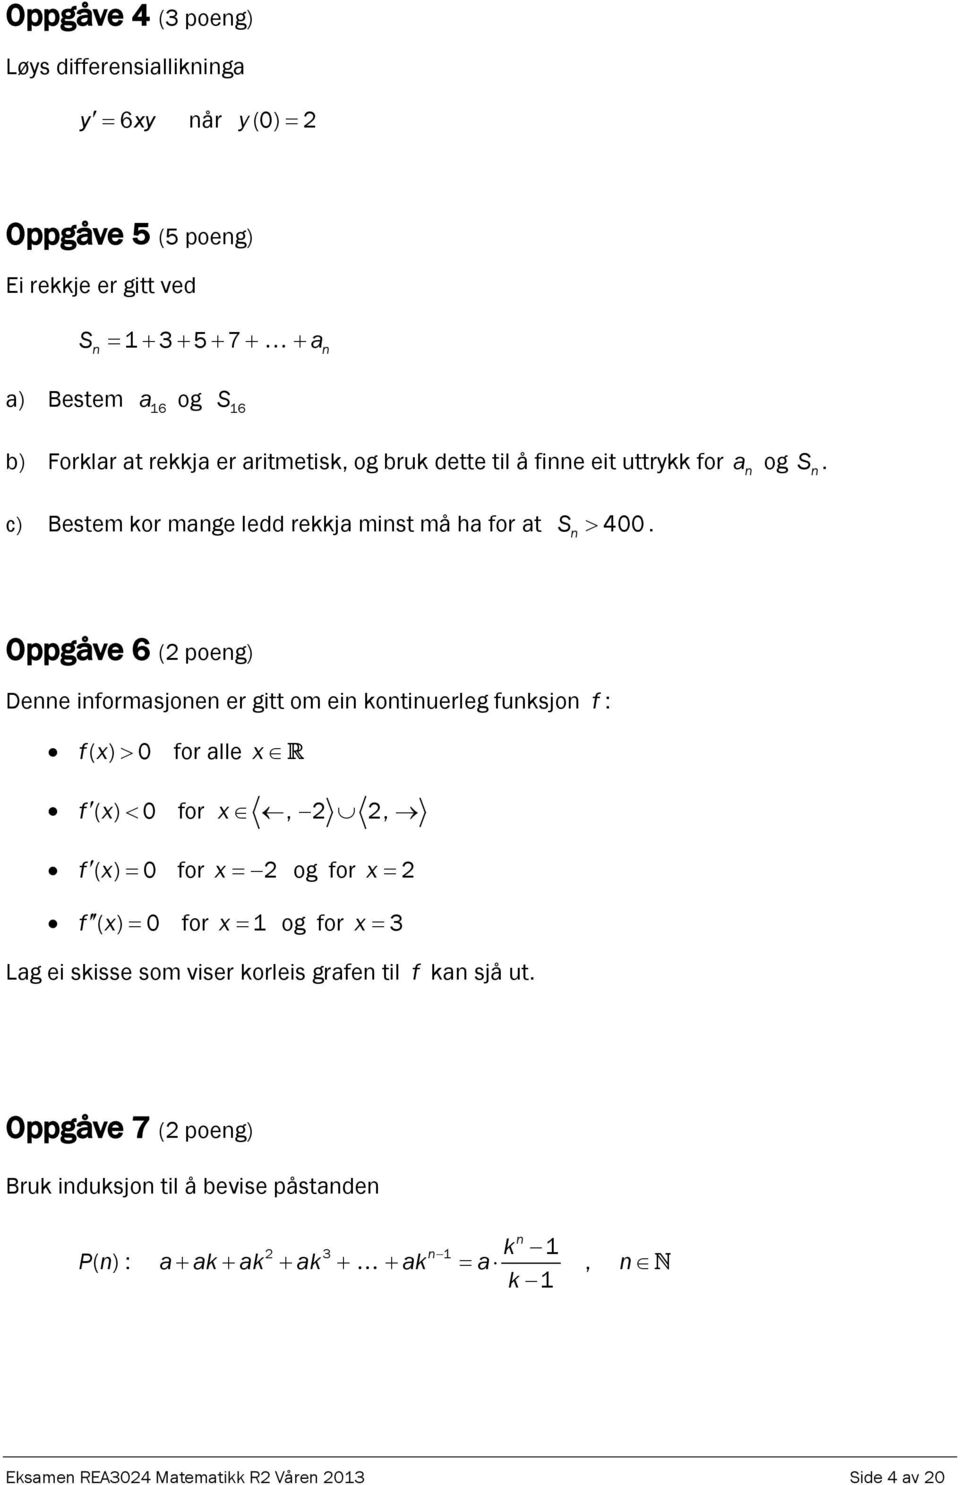 Oppgåve 6 (2 poeg) Dee iformasjoe er gitt om ei kotiuerleg fuksjo f : fx> ( ) 0 for alle x f ( x) < 0 for x, 2 2, f ( x ) = 0 for x = 2 og for x = 2 f ( x ) = 0 for x = 1